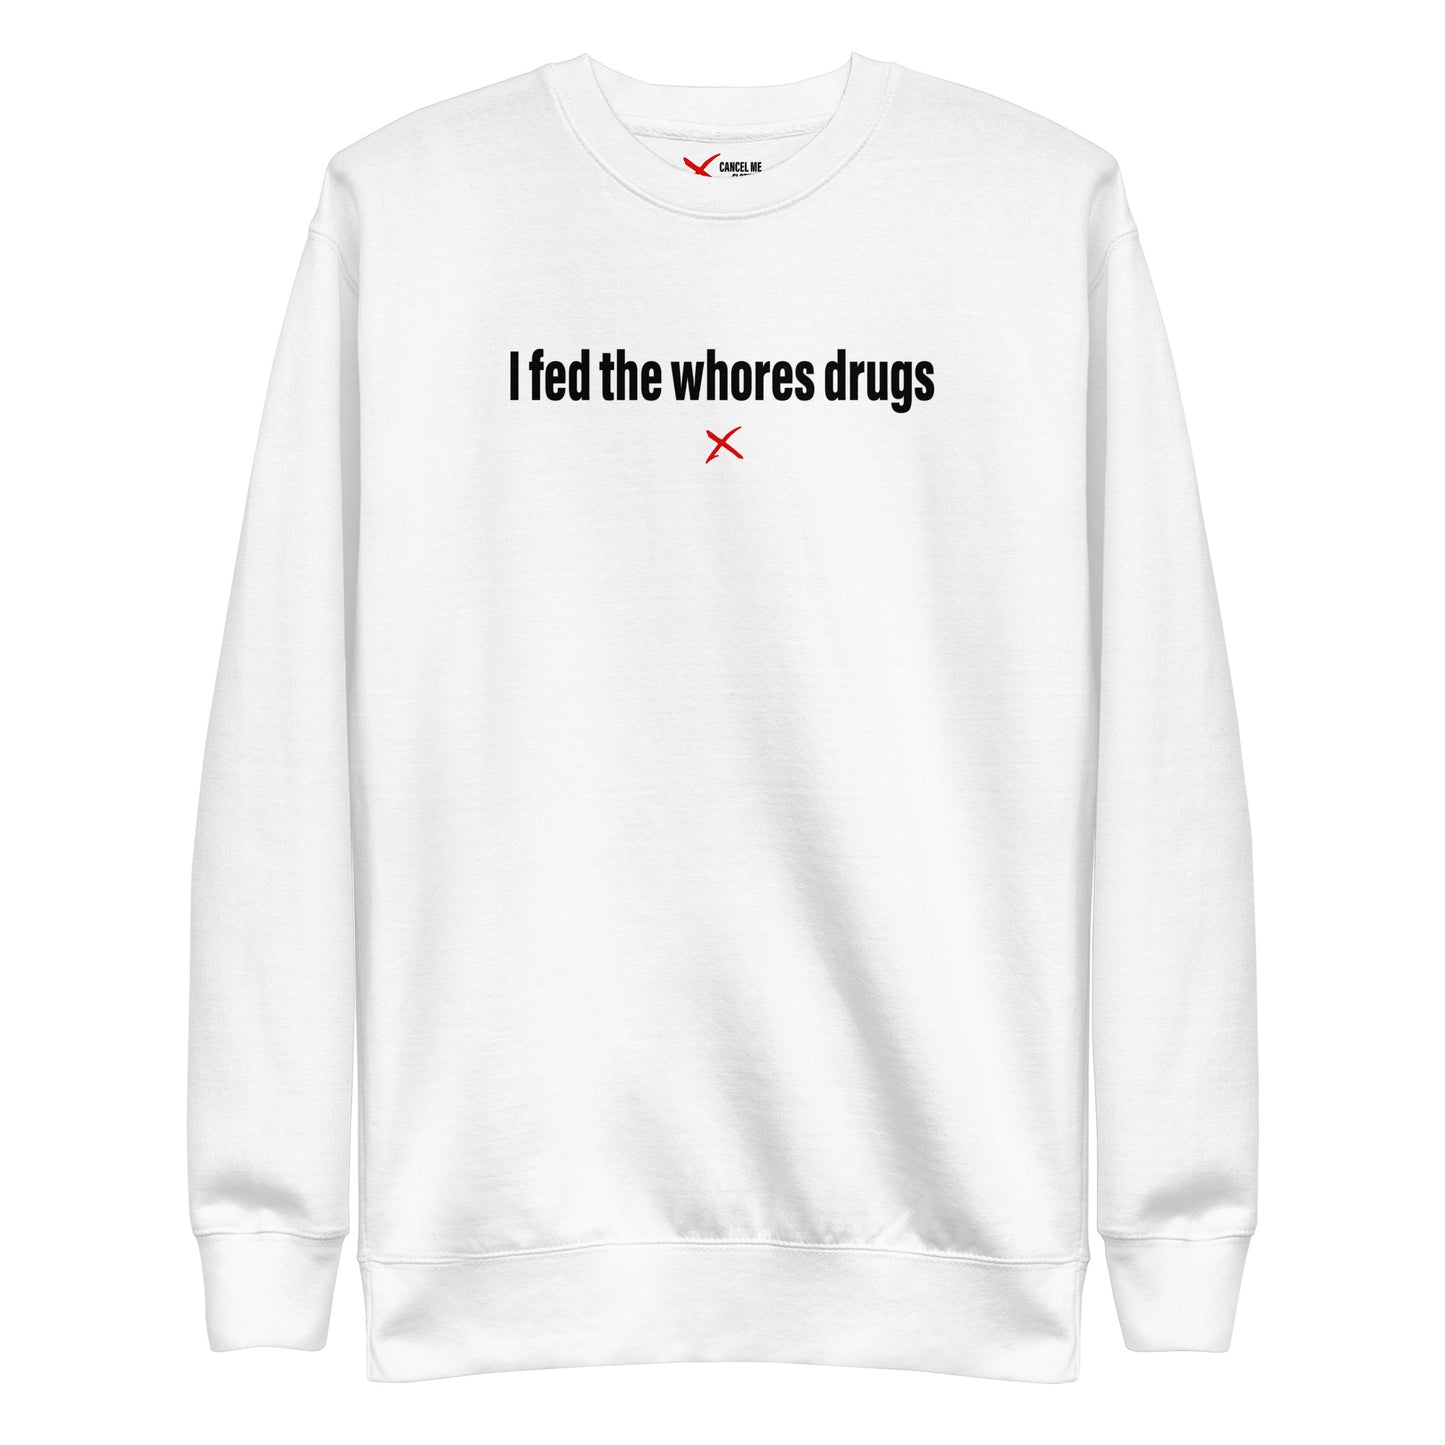 I fed the whores drugs - Sweatshirt